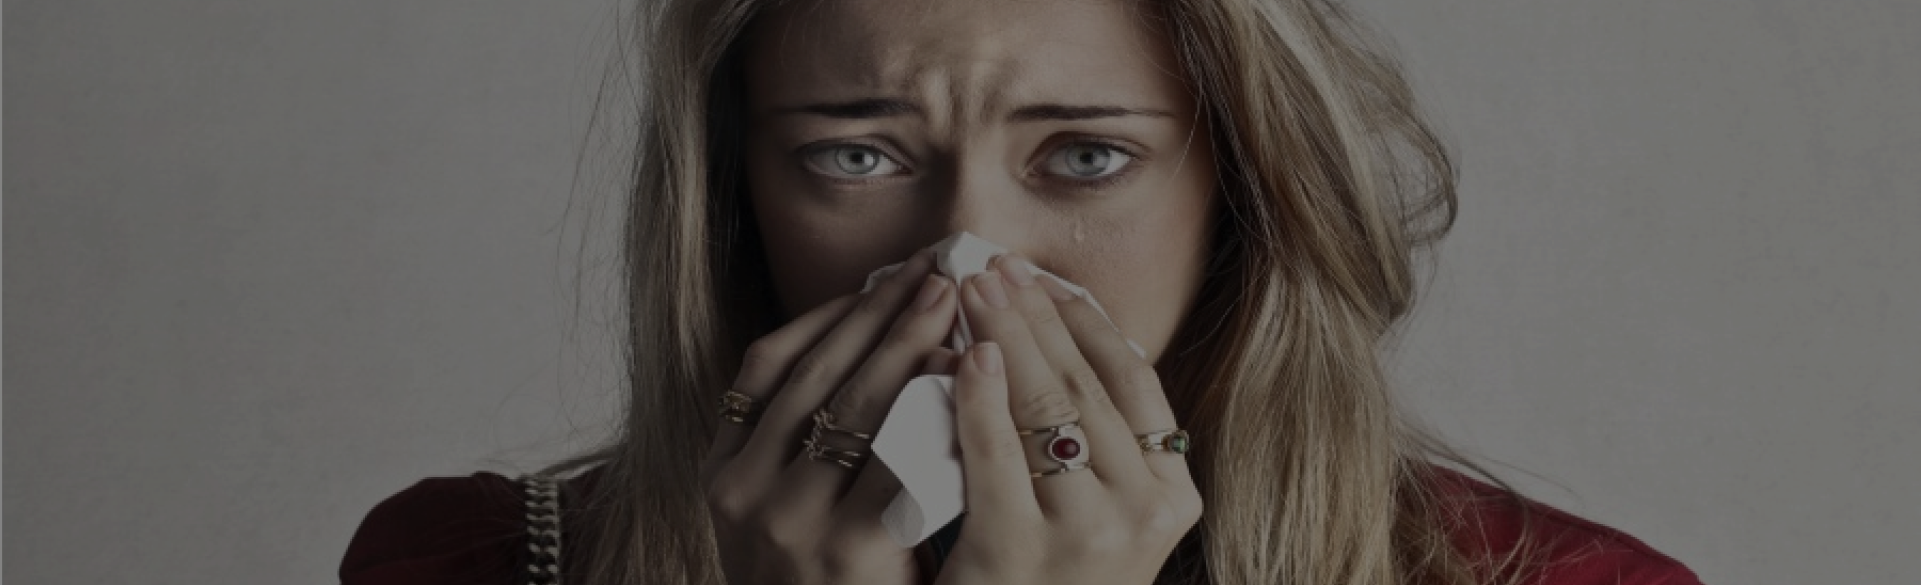 Gripe y resfriados en otoño